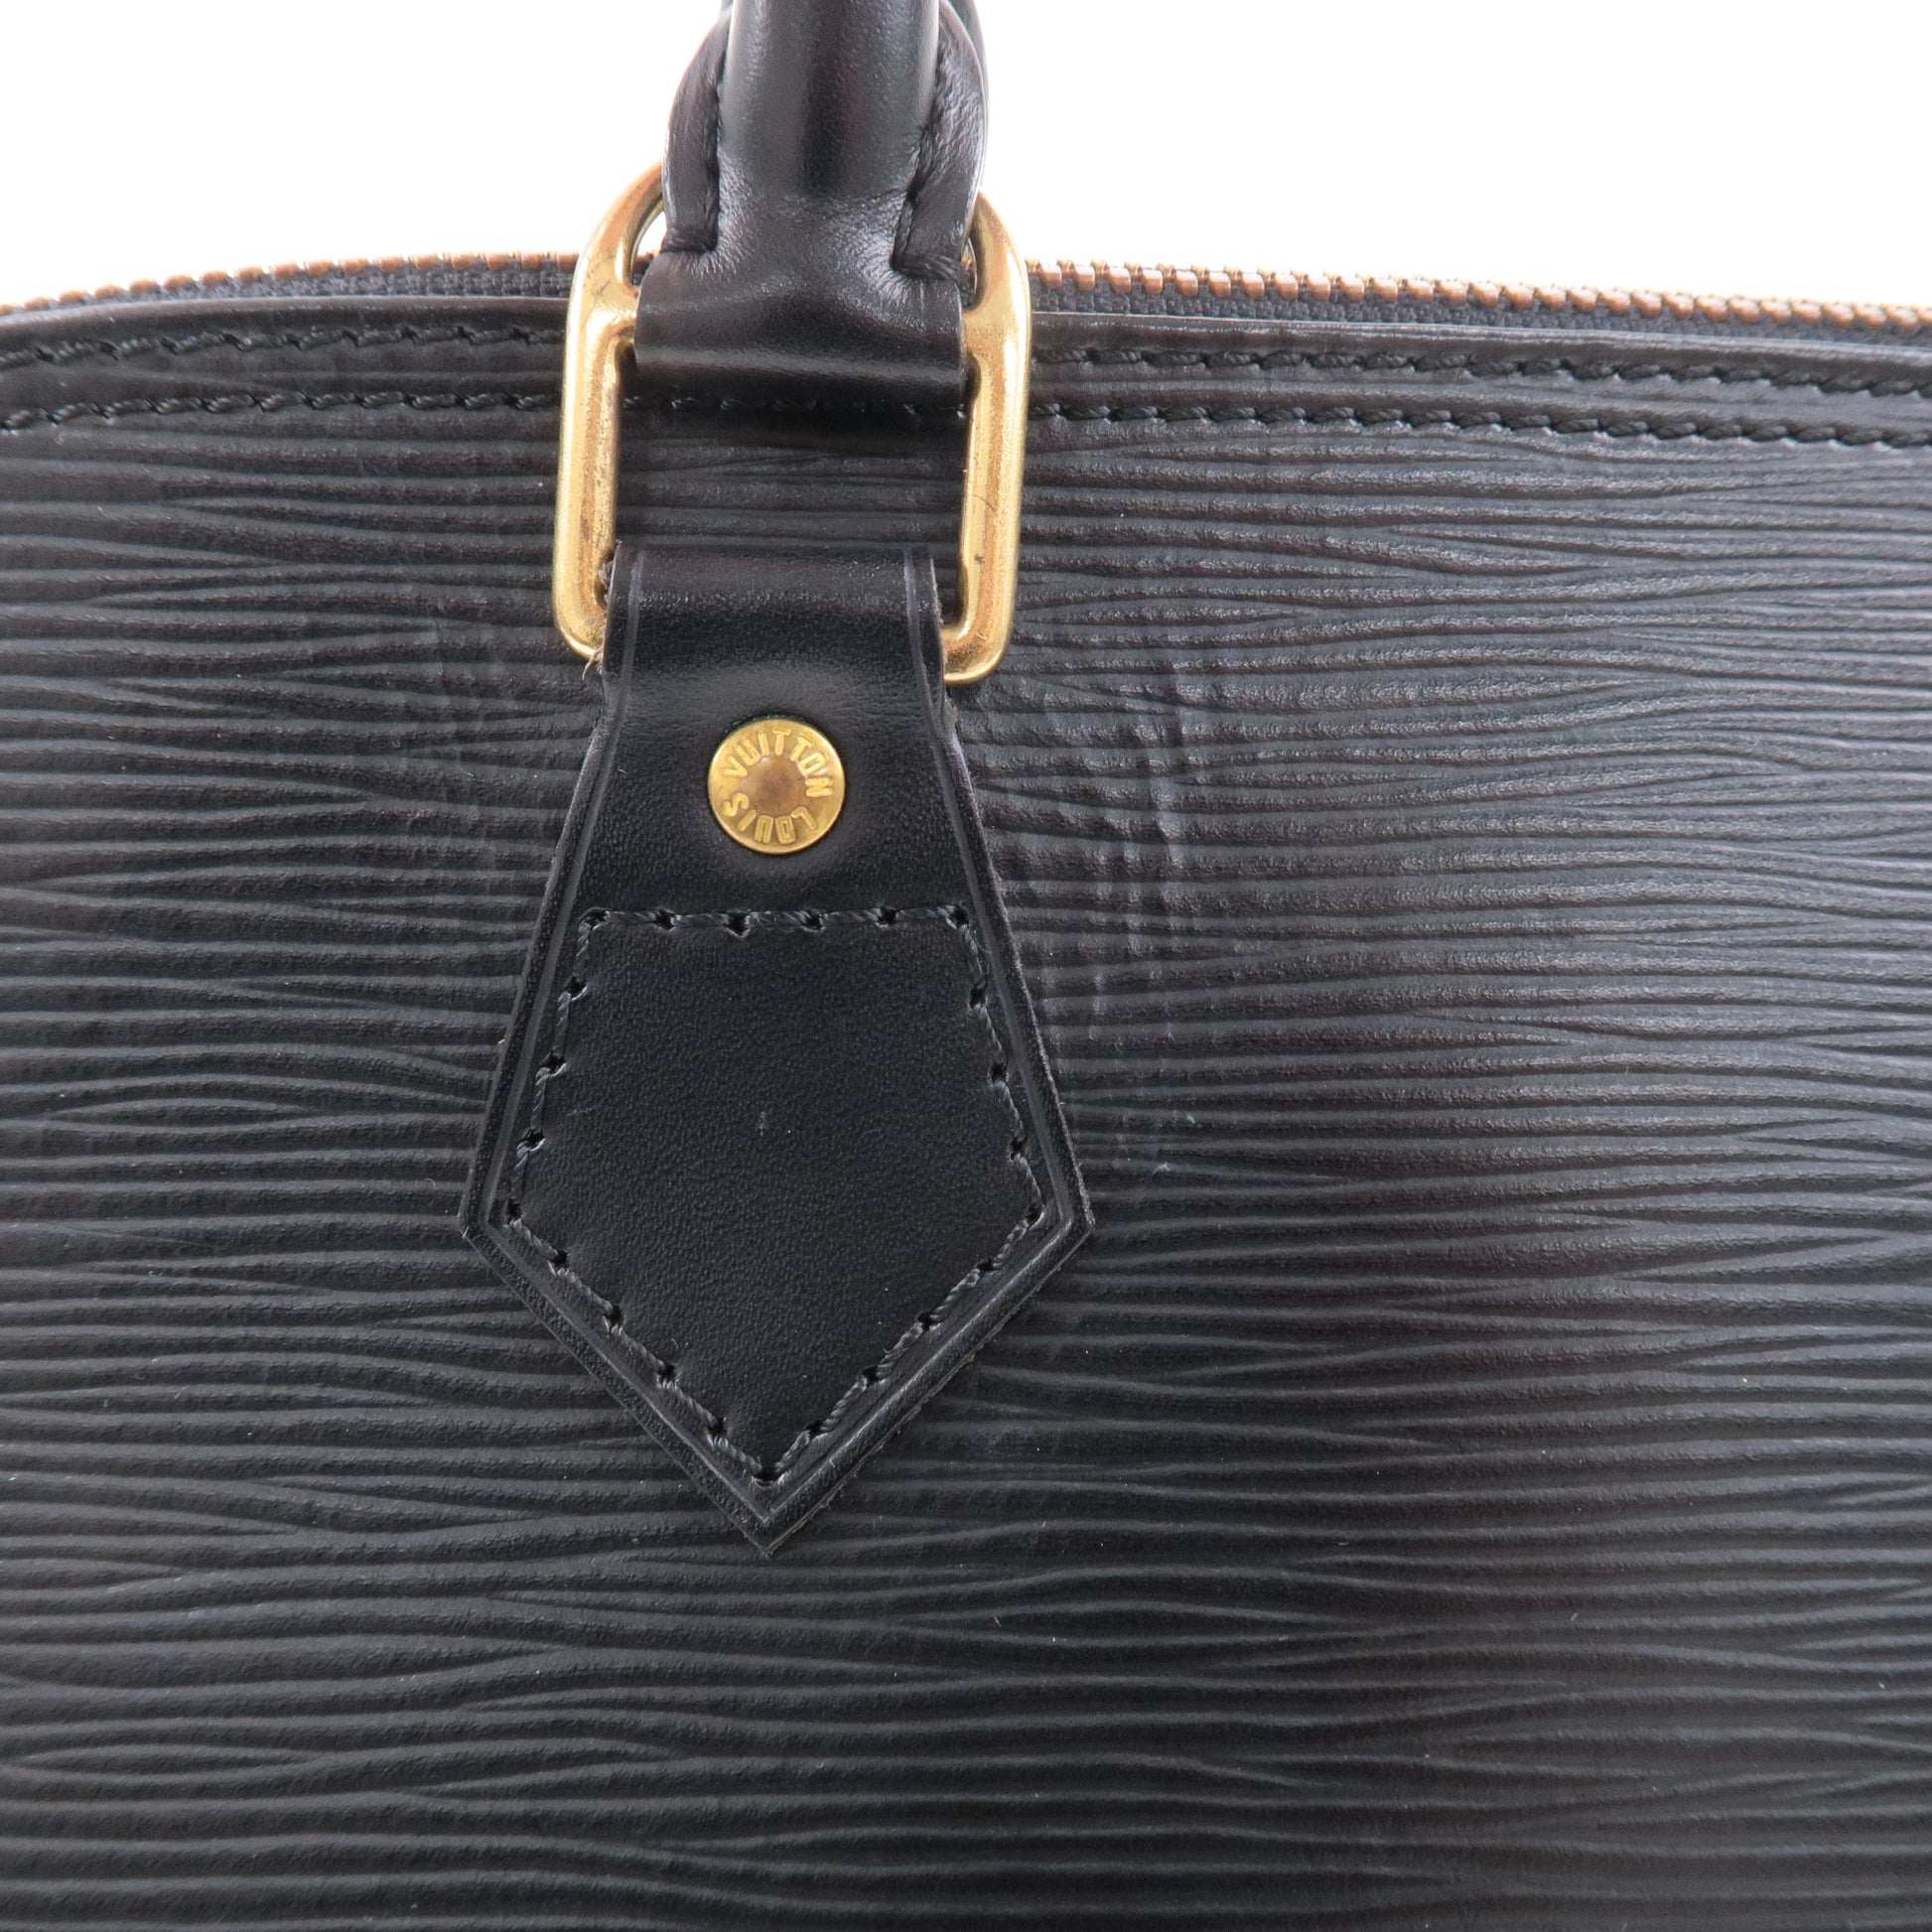 LOUIS VUITTON Handbag M52143 Alma Epi Epi Leather Brown Women Used –